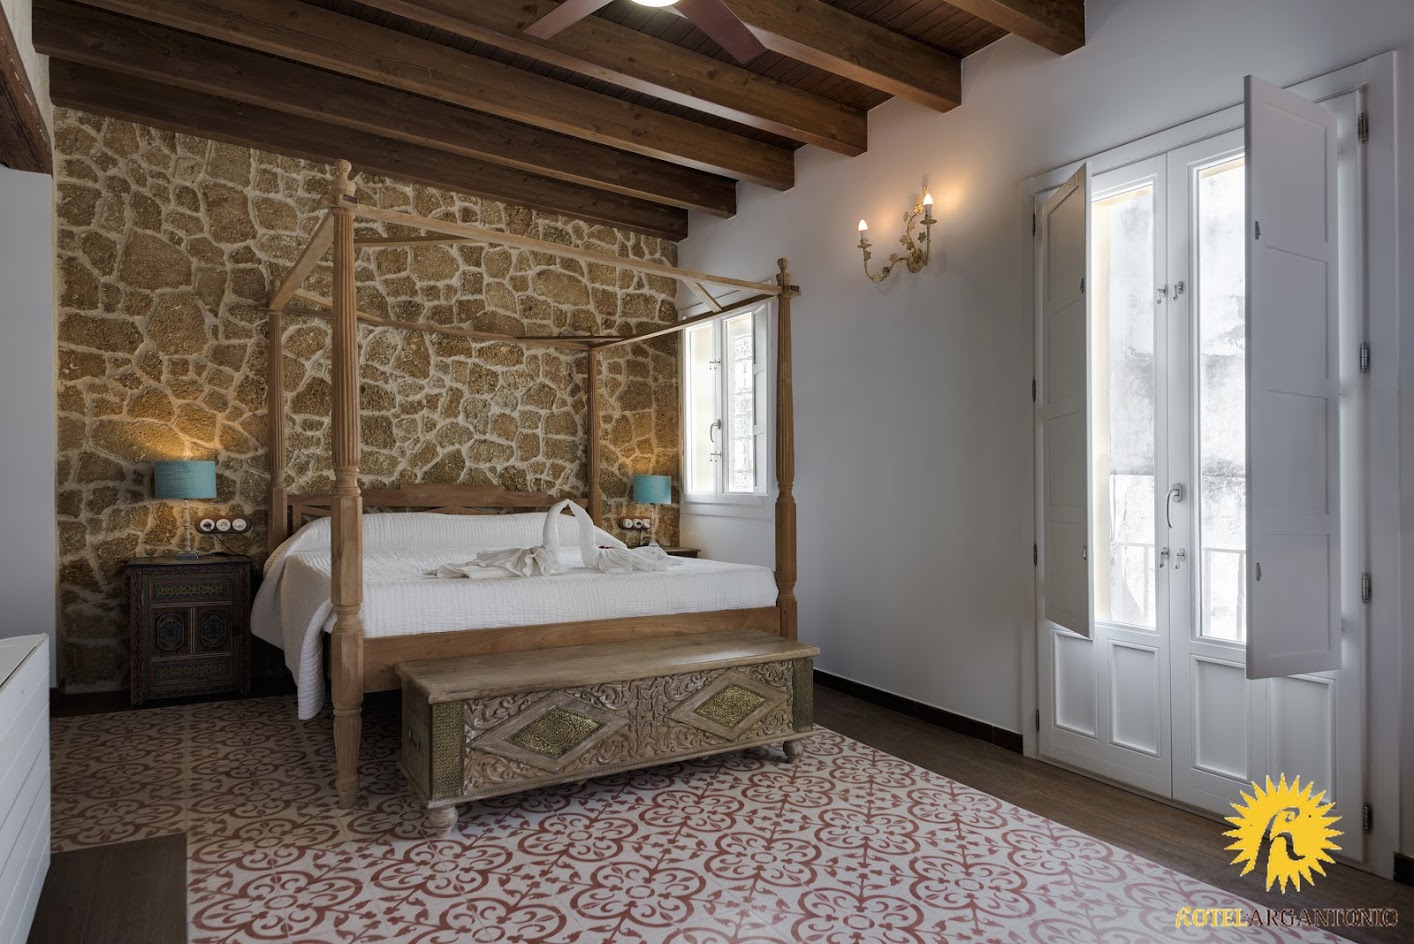 Zenobia Suite Room 01 - Hotel Argantonio in Cadiz